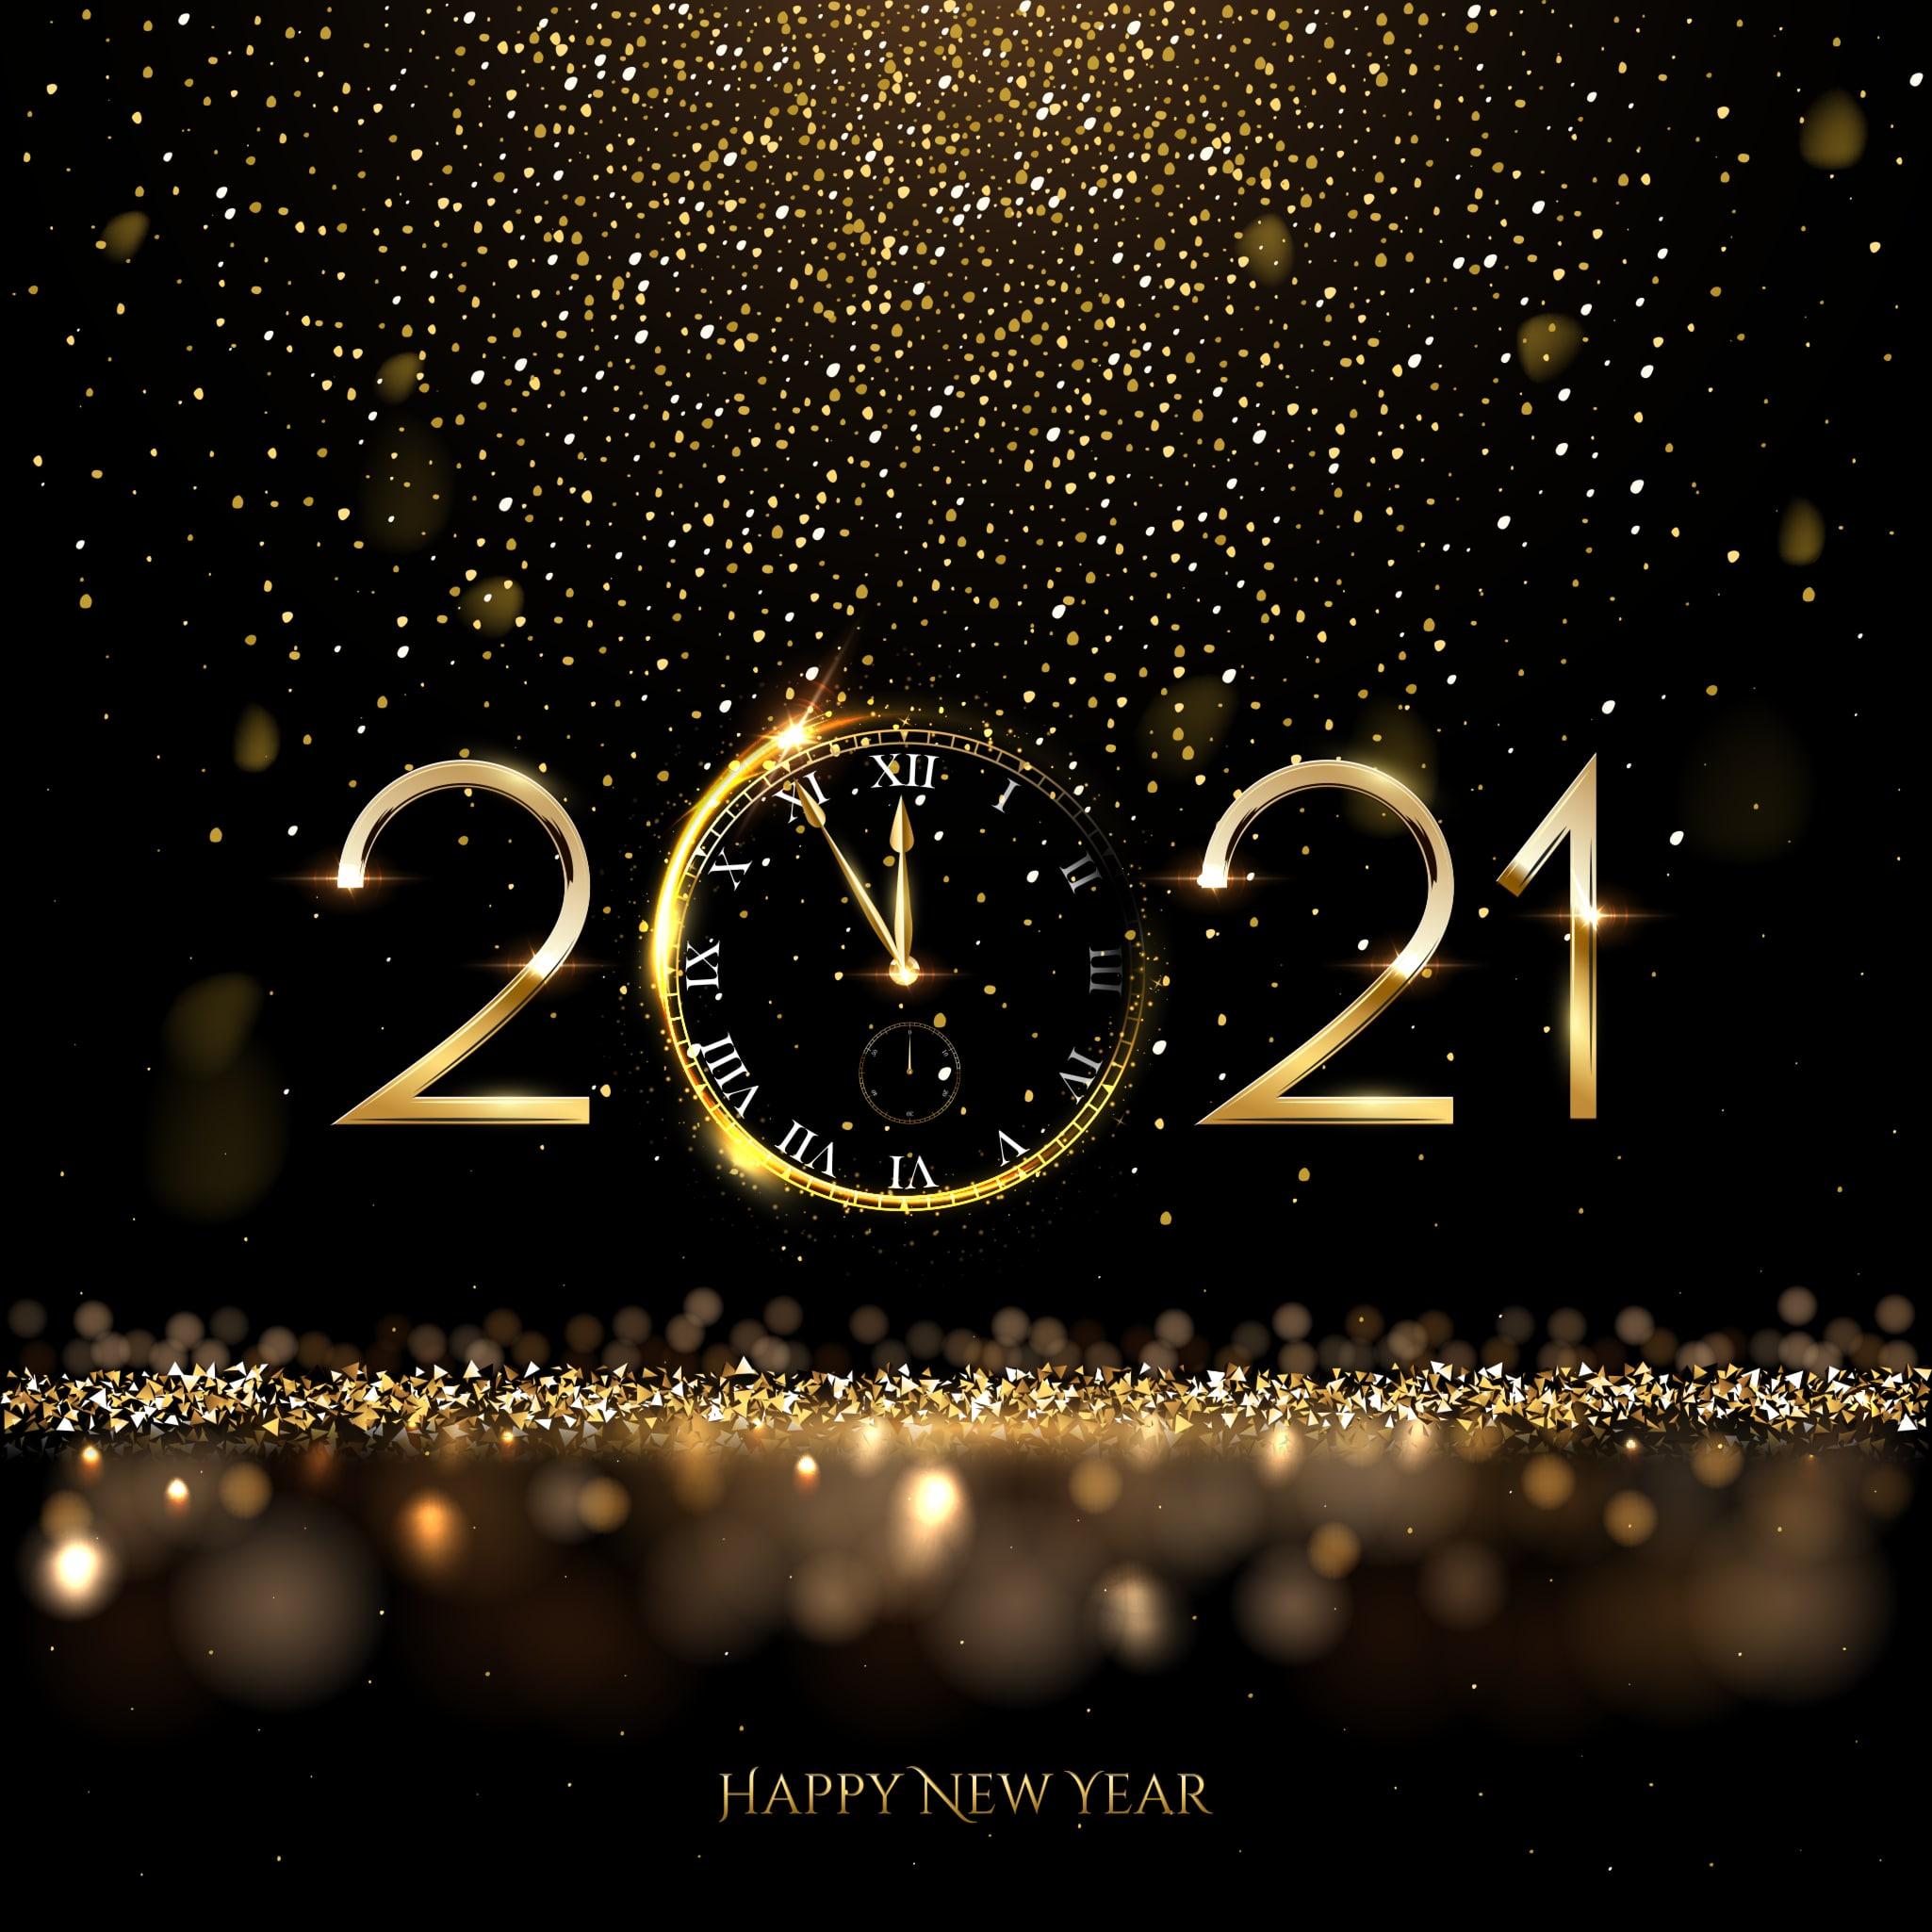 Tradiții și obiceiuri de Revelion 2021. Cum trebuie să arate masa de Anul Nou și ce nu e indicat să faci pe 1 ianuarie